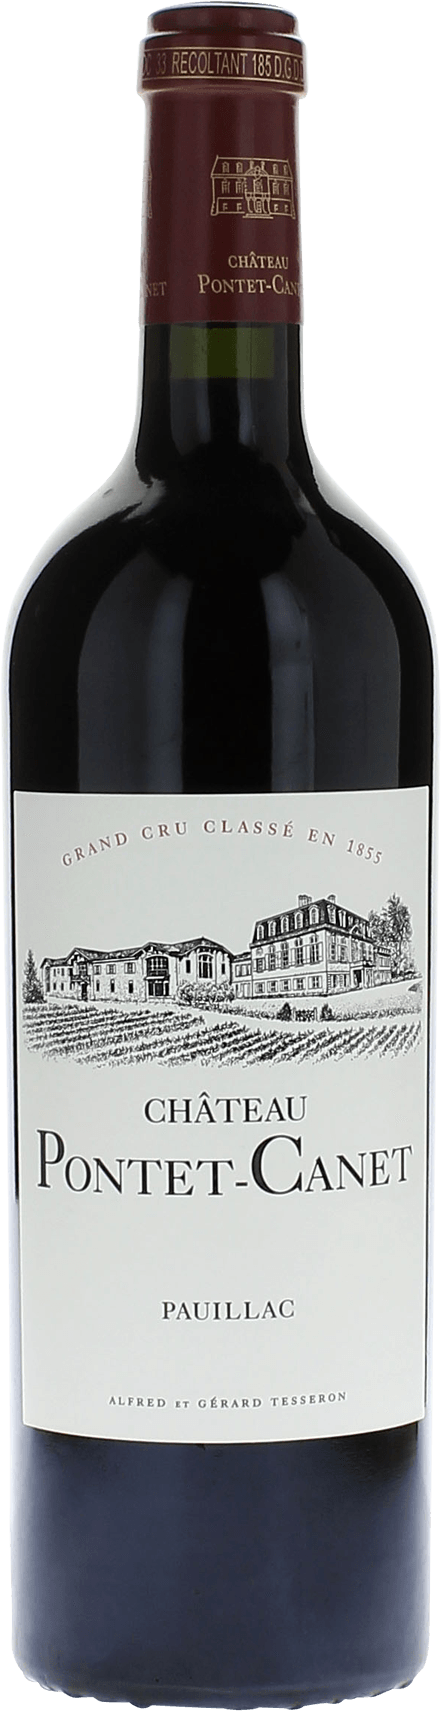 Pontet canet 1990 5me Grand cru class Pauillac, Bordeaux rouge